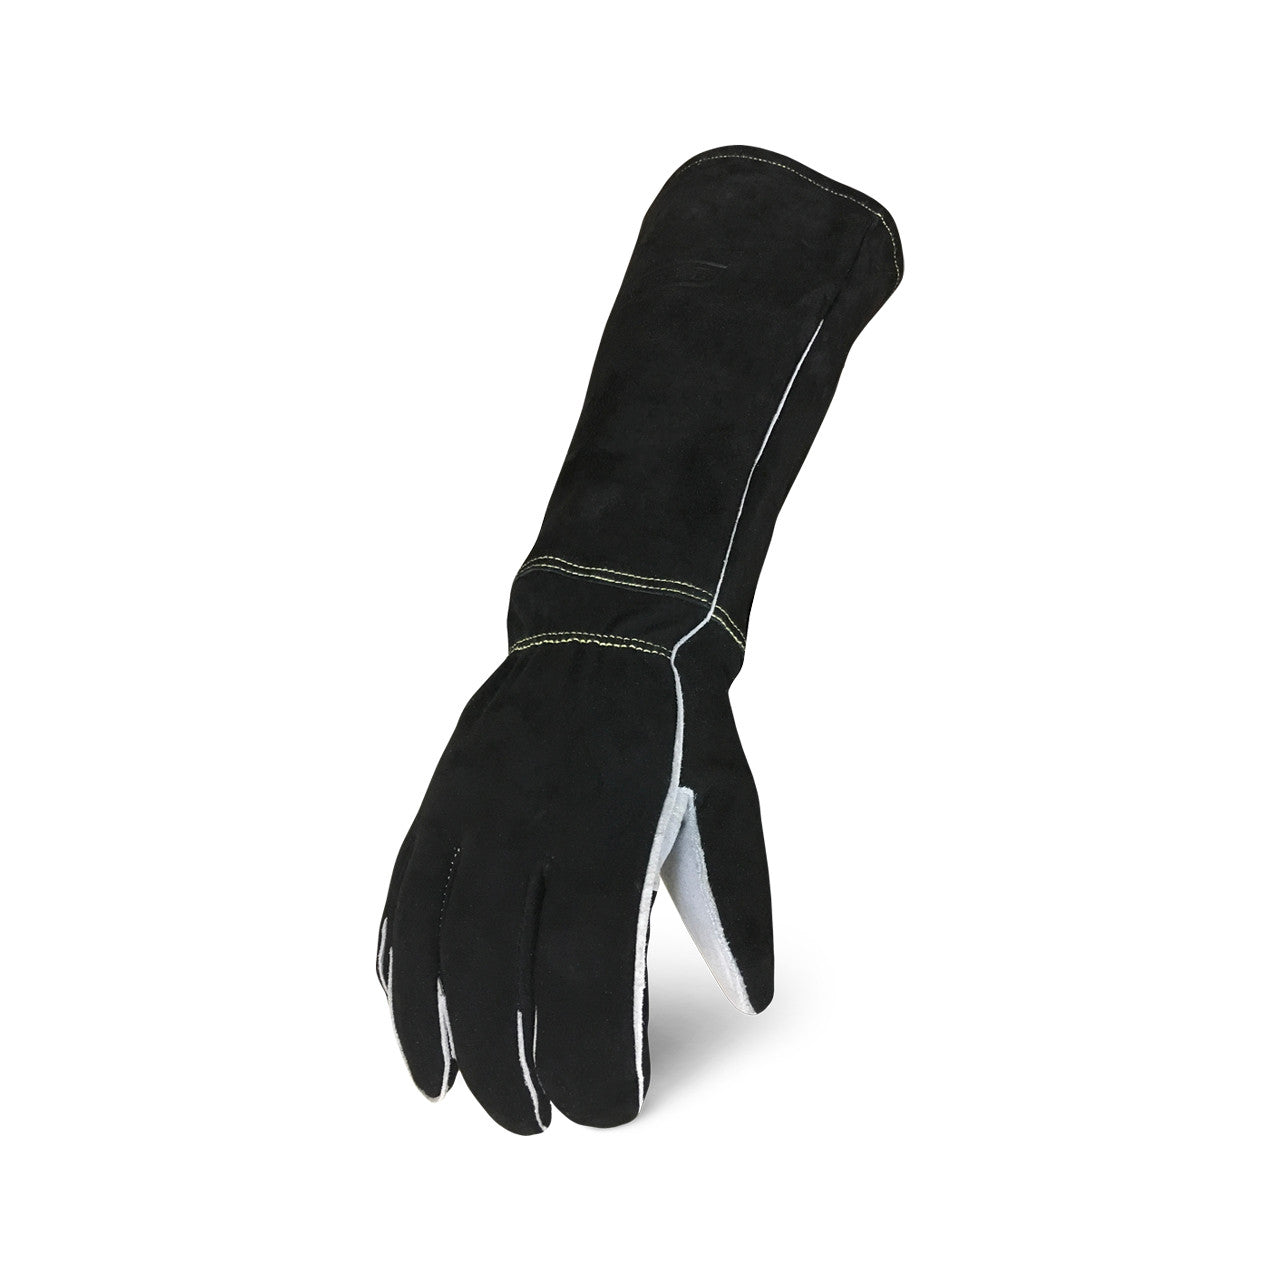 Ironclad Stick Welder Glove Black-eSafety Supplies, Inc